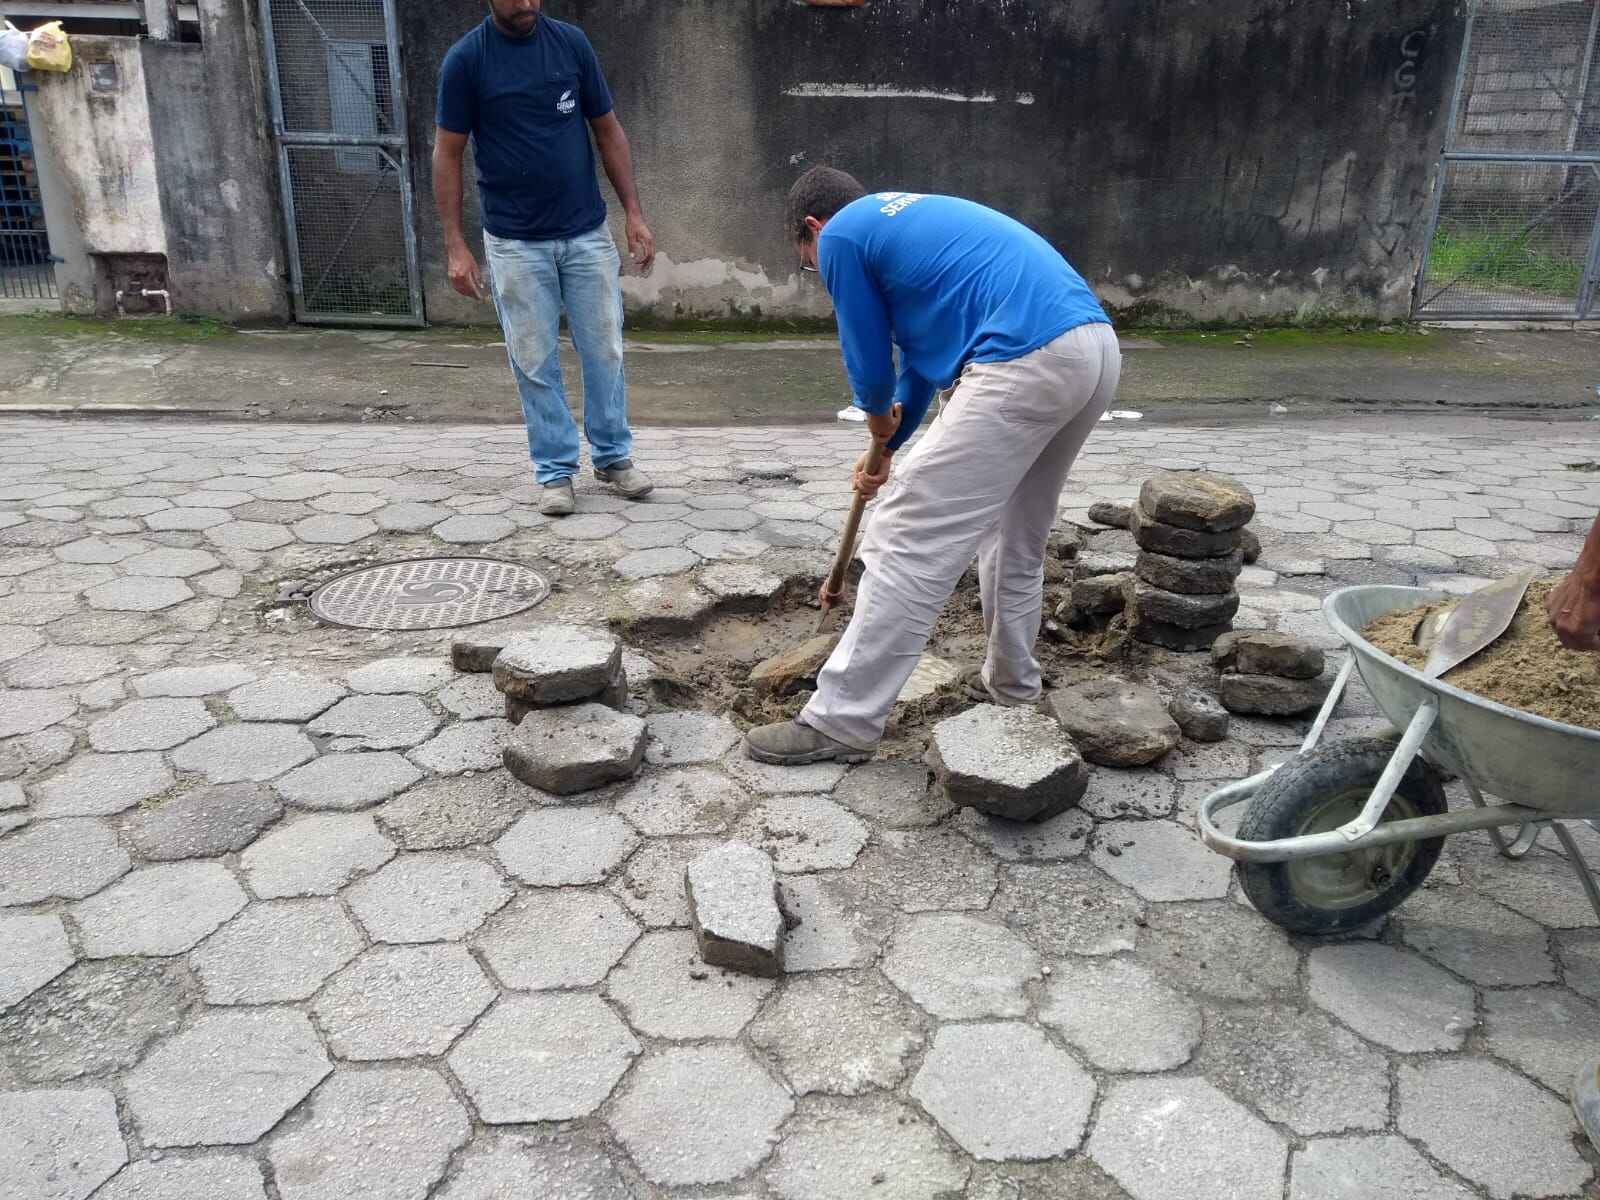 Prefeitura de Caraguatatuba realiza manutenção de bloquetes em vias do município